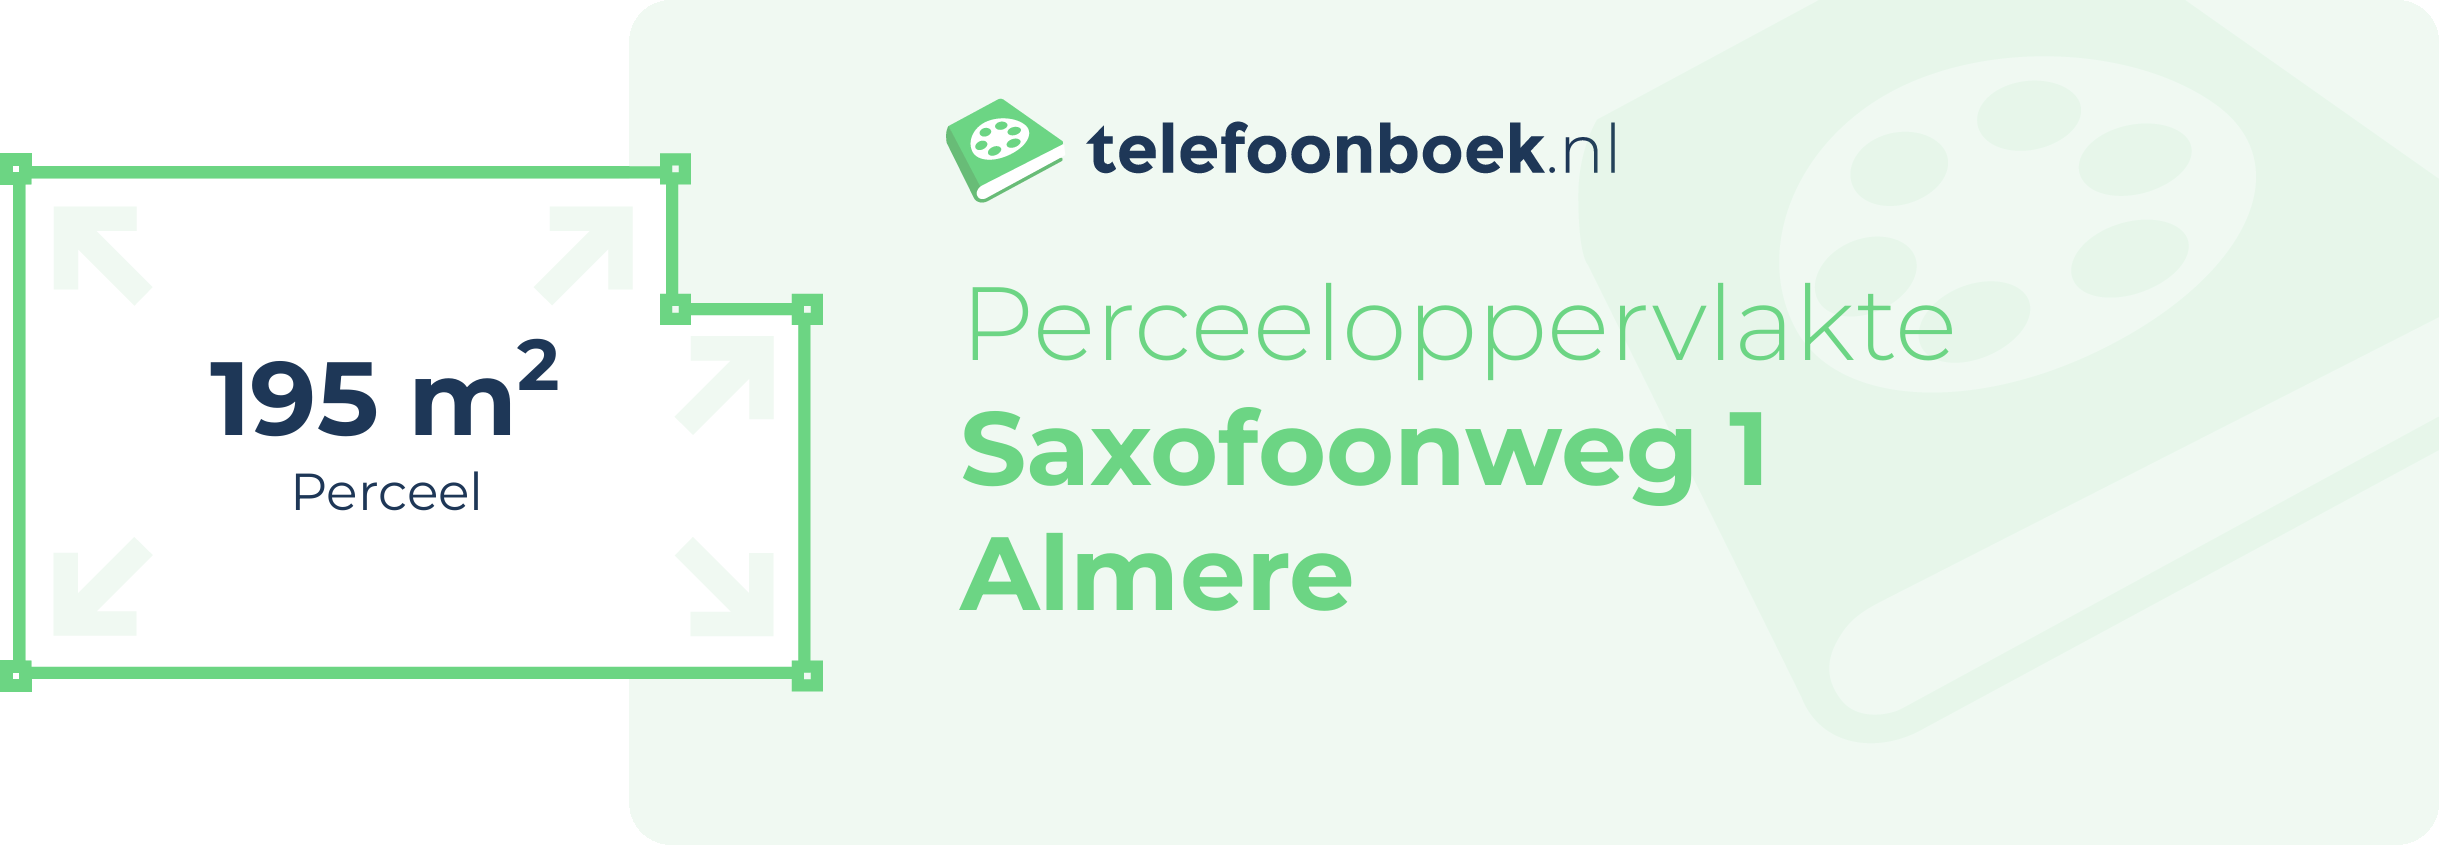 Perceeloppervlakte Saxofoonweg 1 Almere